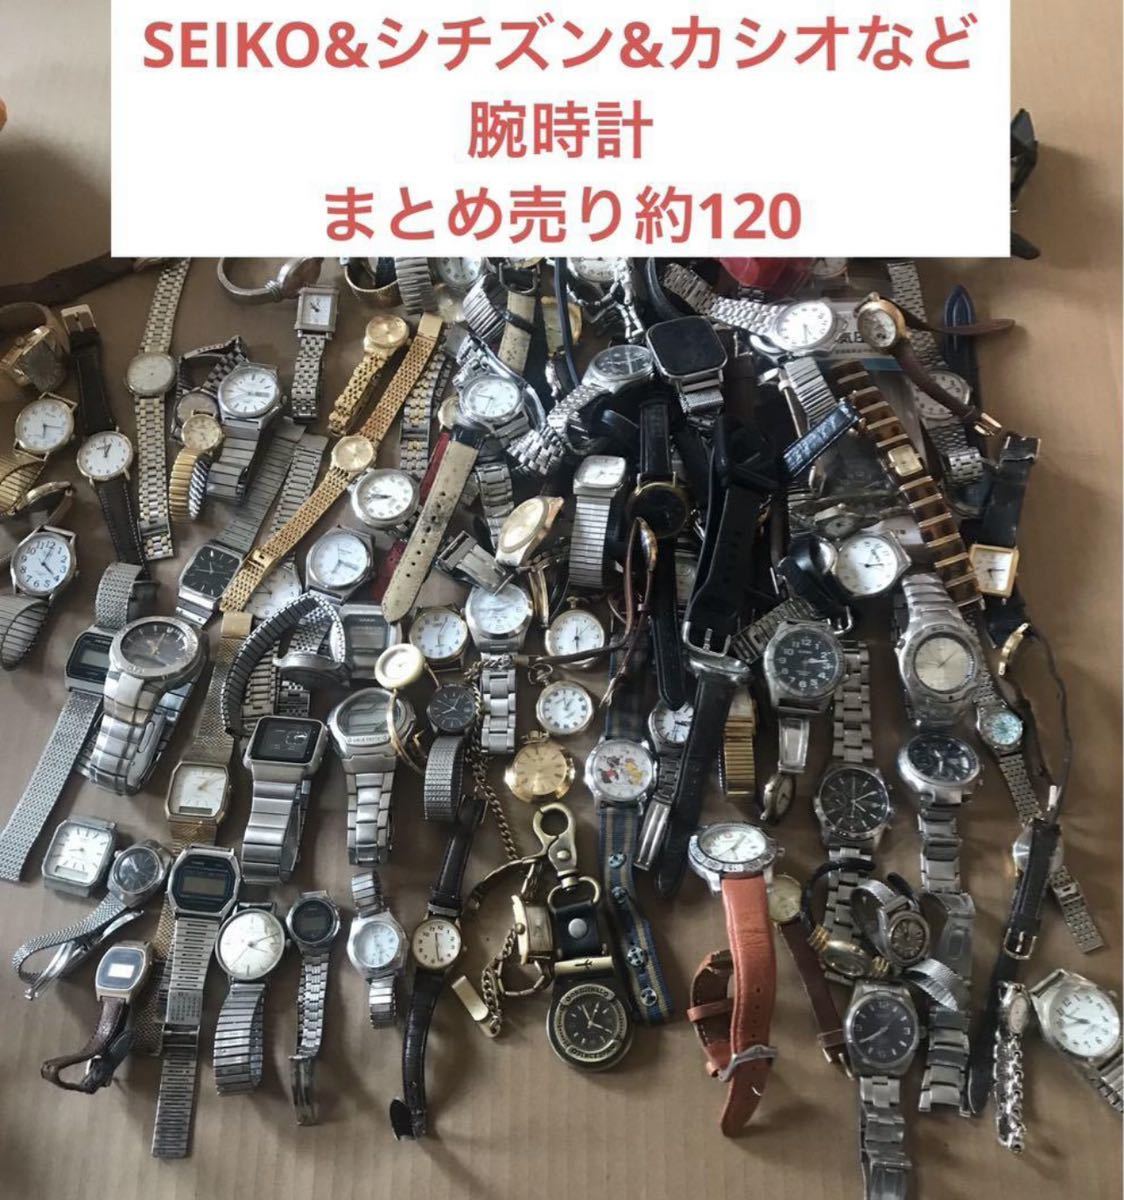 SEIKO&シチズン&カシオなど腕時計まとめ売り約120